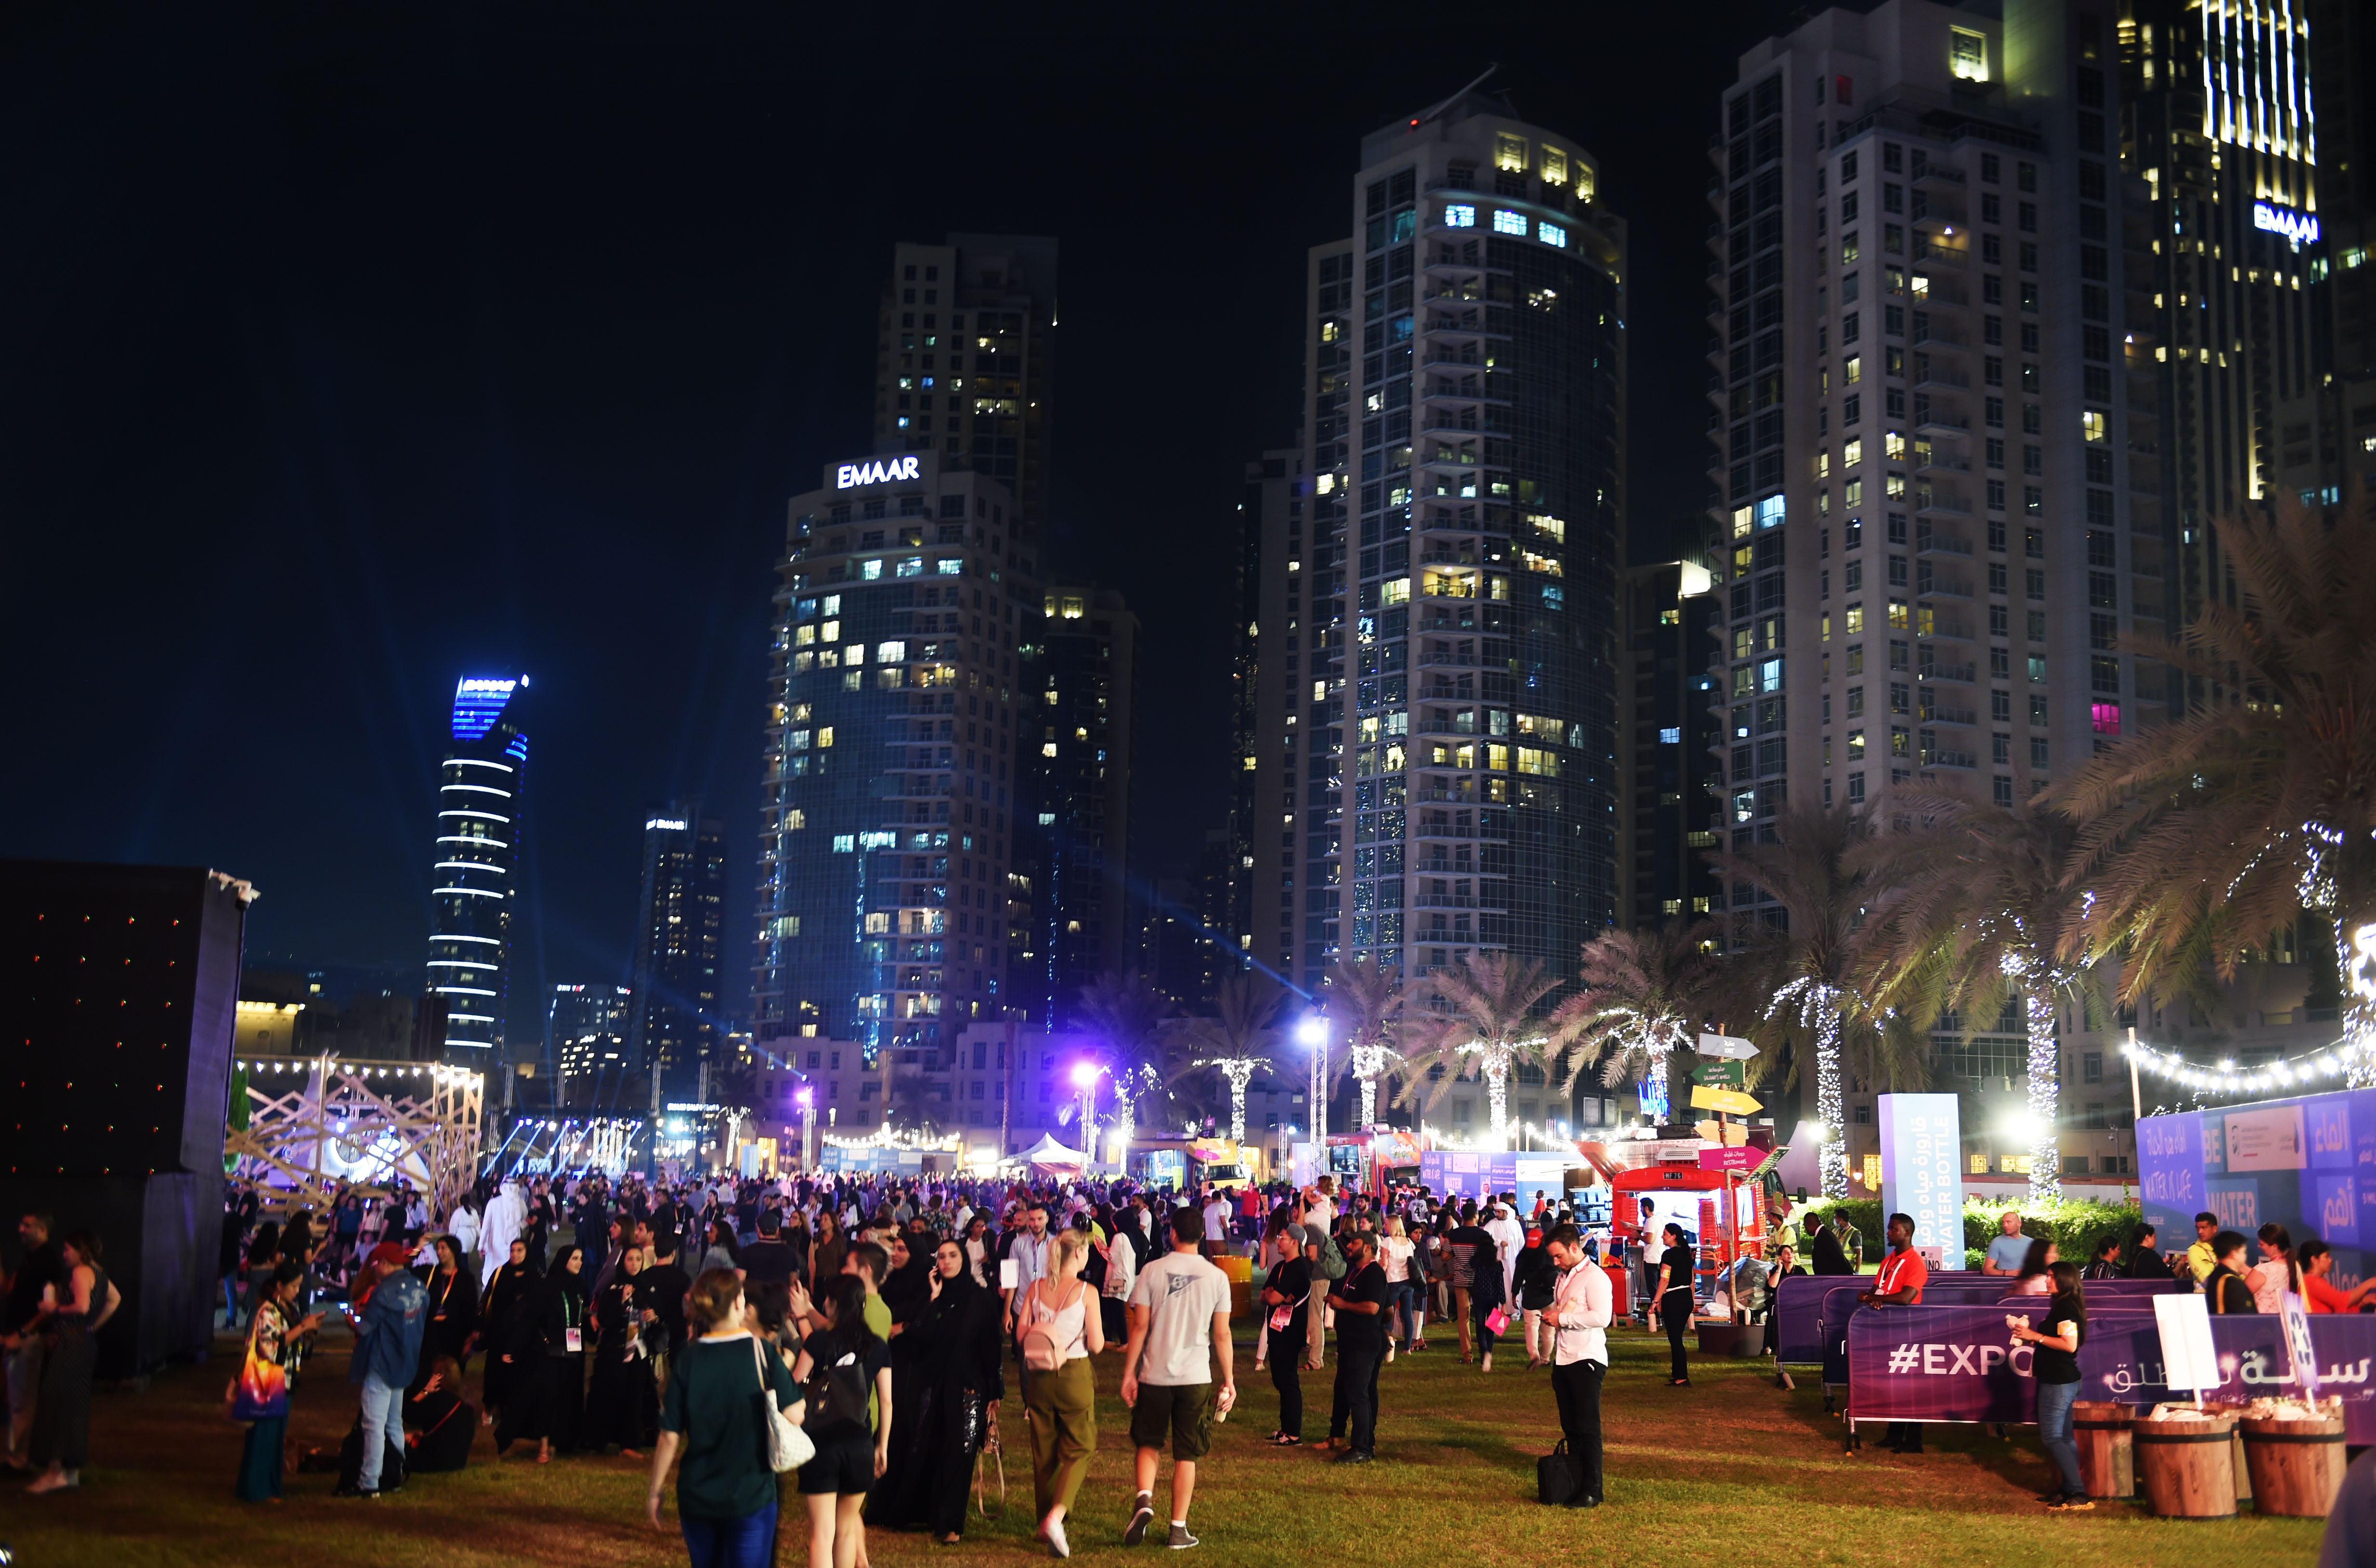 احتفالات هائلة في أنحاء الدولة وعرض مبهر بمناسبة  سنة لننطلق  إلى إكسبو 2020 دبي